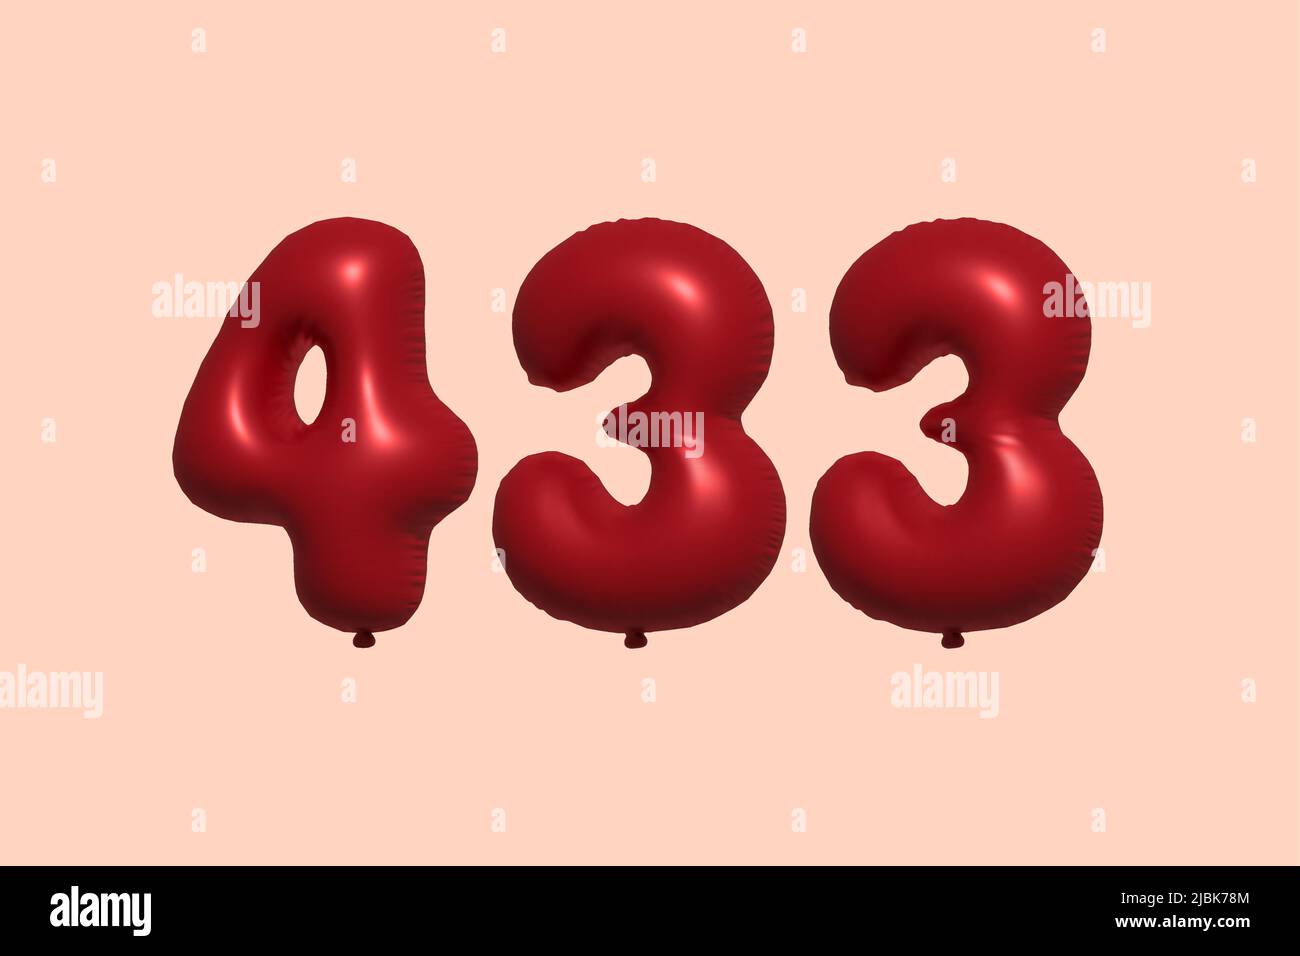 433 3D Zahlenballon aus realistischem metallischem Luftballon 3D Rendering. 3D Rote Heliumballons zum Verkauf Dekoration Party Geburtstag, Jubiläum feiern, Hochzeitsfeiertag. Vektorgrafik Stock Vektor